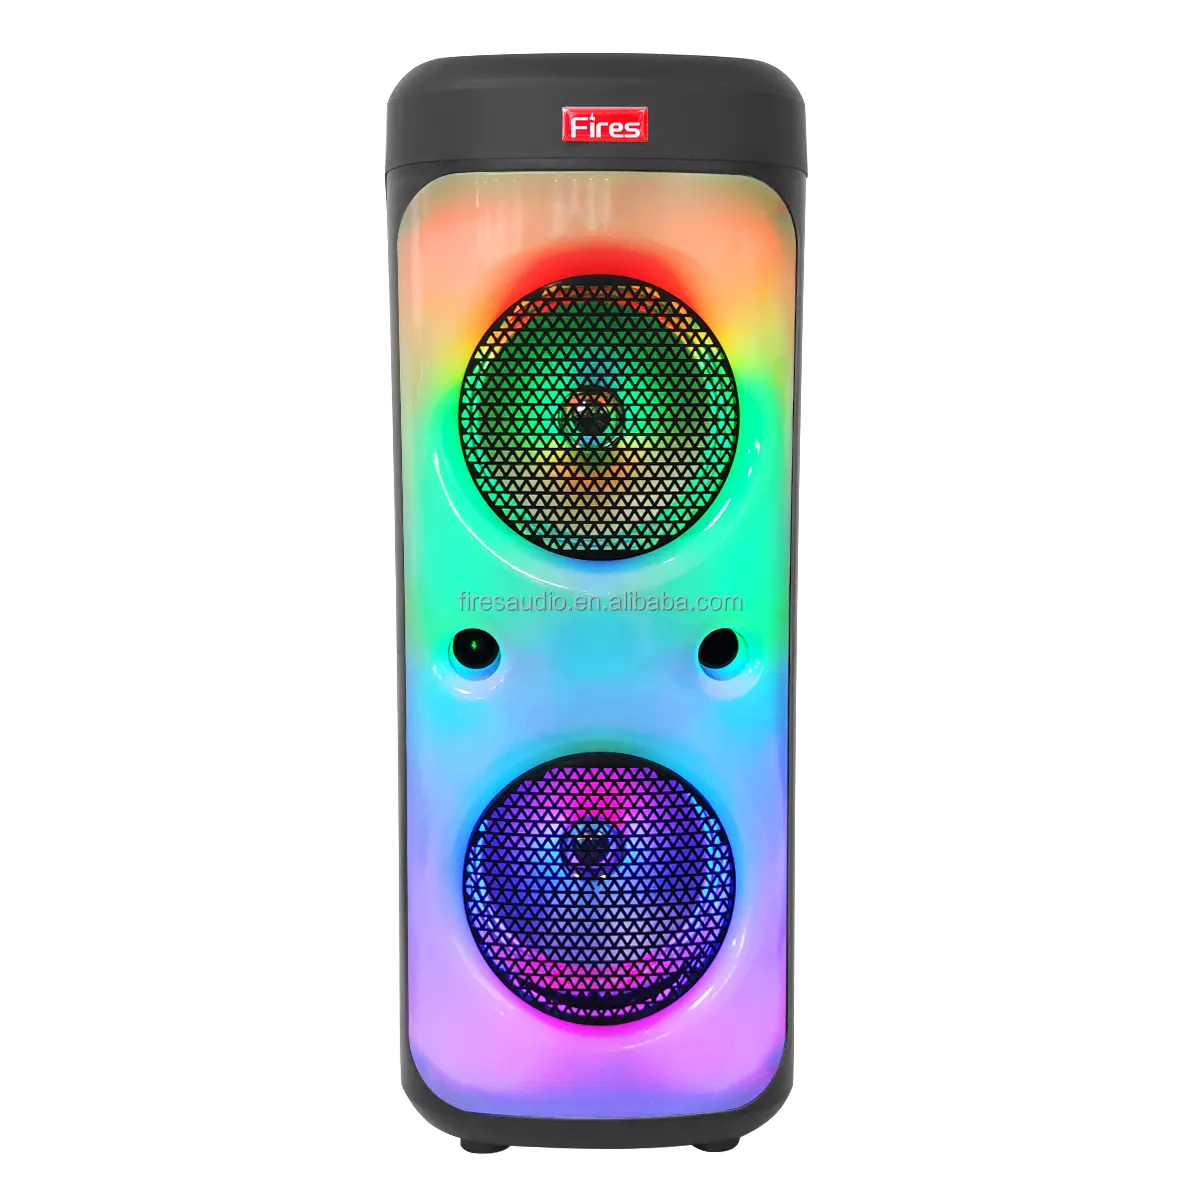 Megáfono portátil para karaoke, reproductor de música recargable con Bluetooth, caja de audio de alta fidelidad, difusor electrónico, con pinchos, haut parleur, anuncios activos